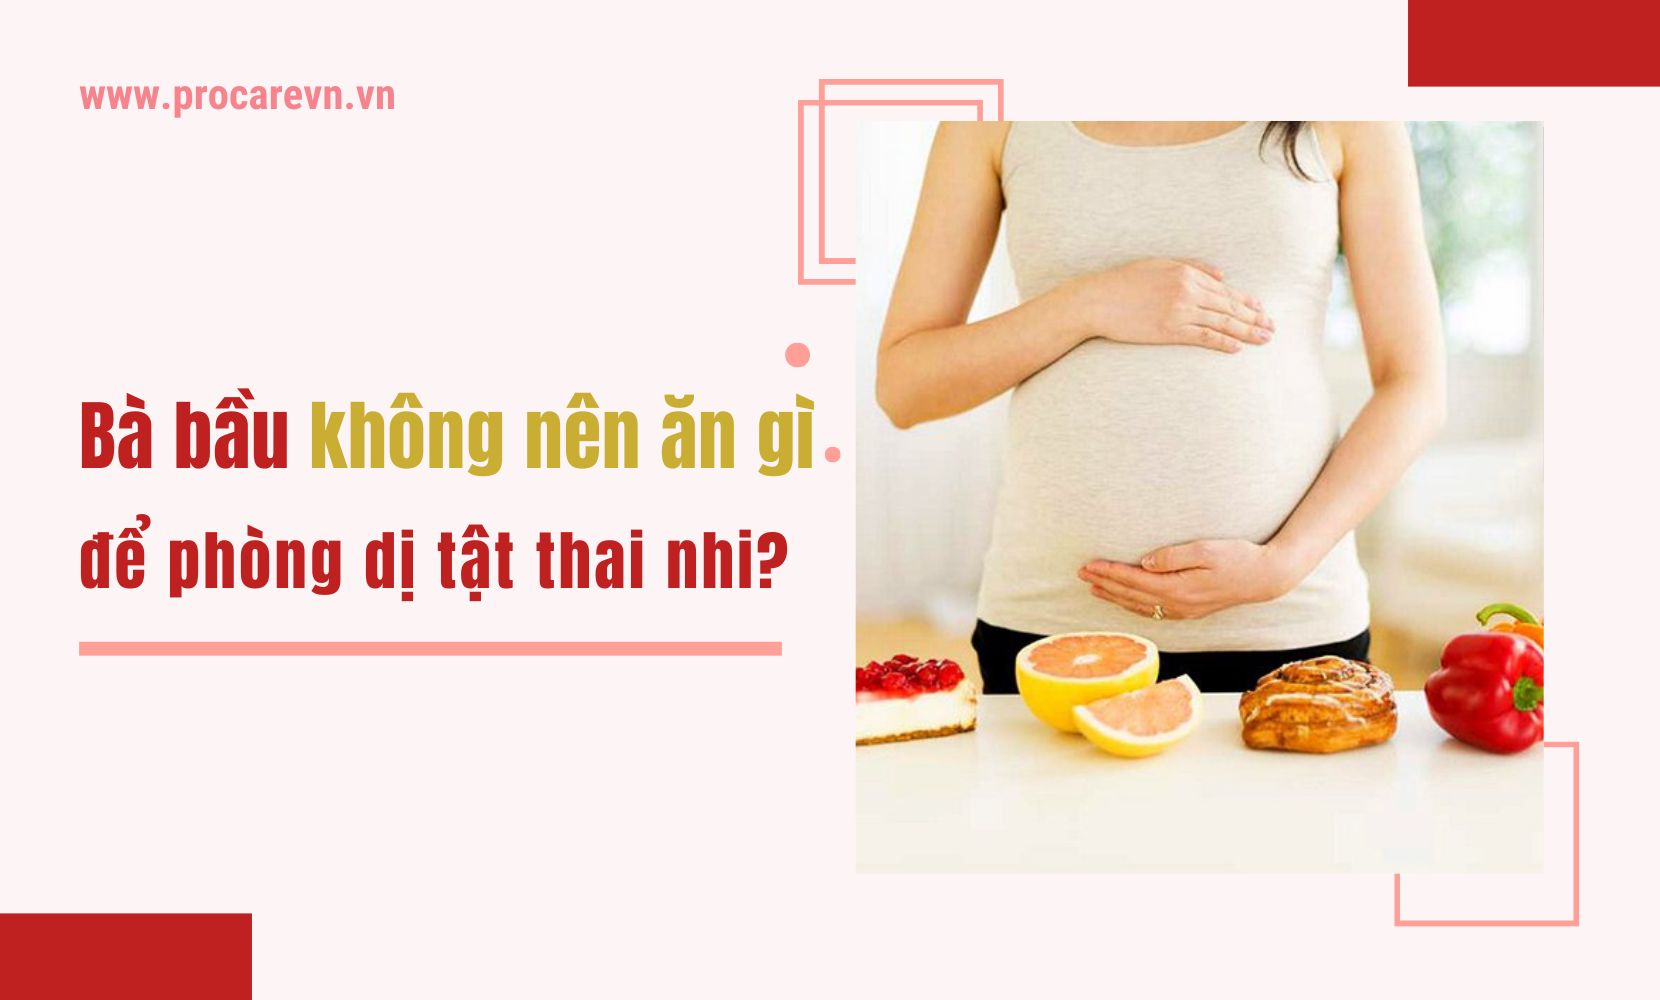 Những món ăn nào nên tránh khi mang thai ba tháng đầu?
